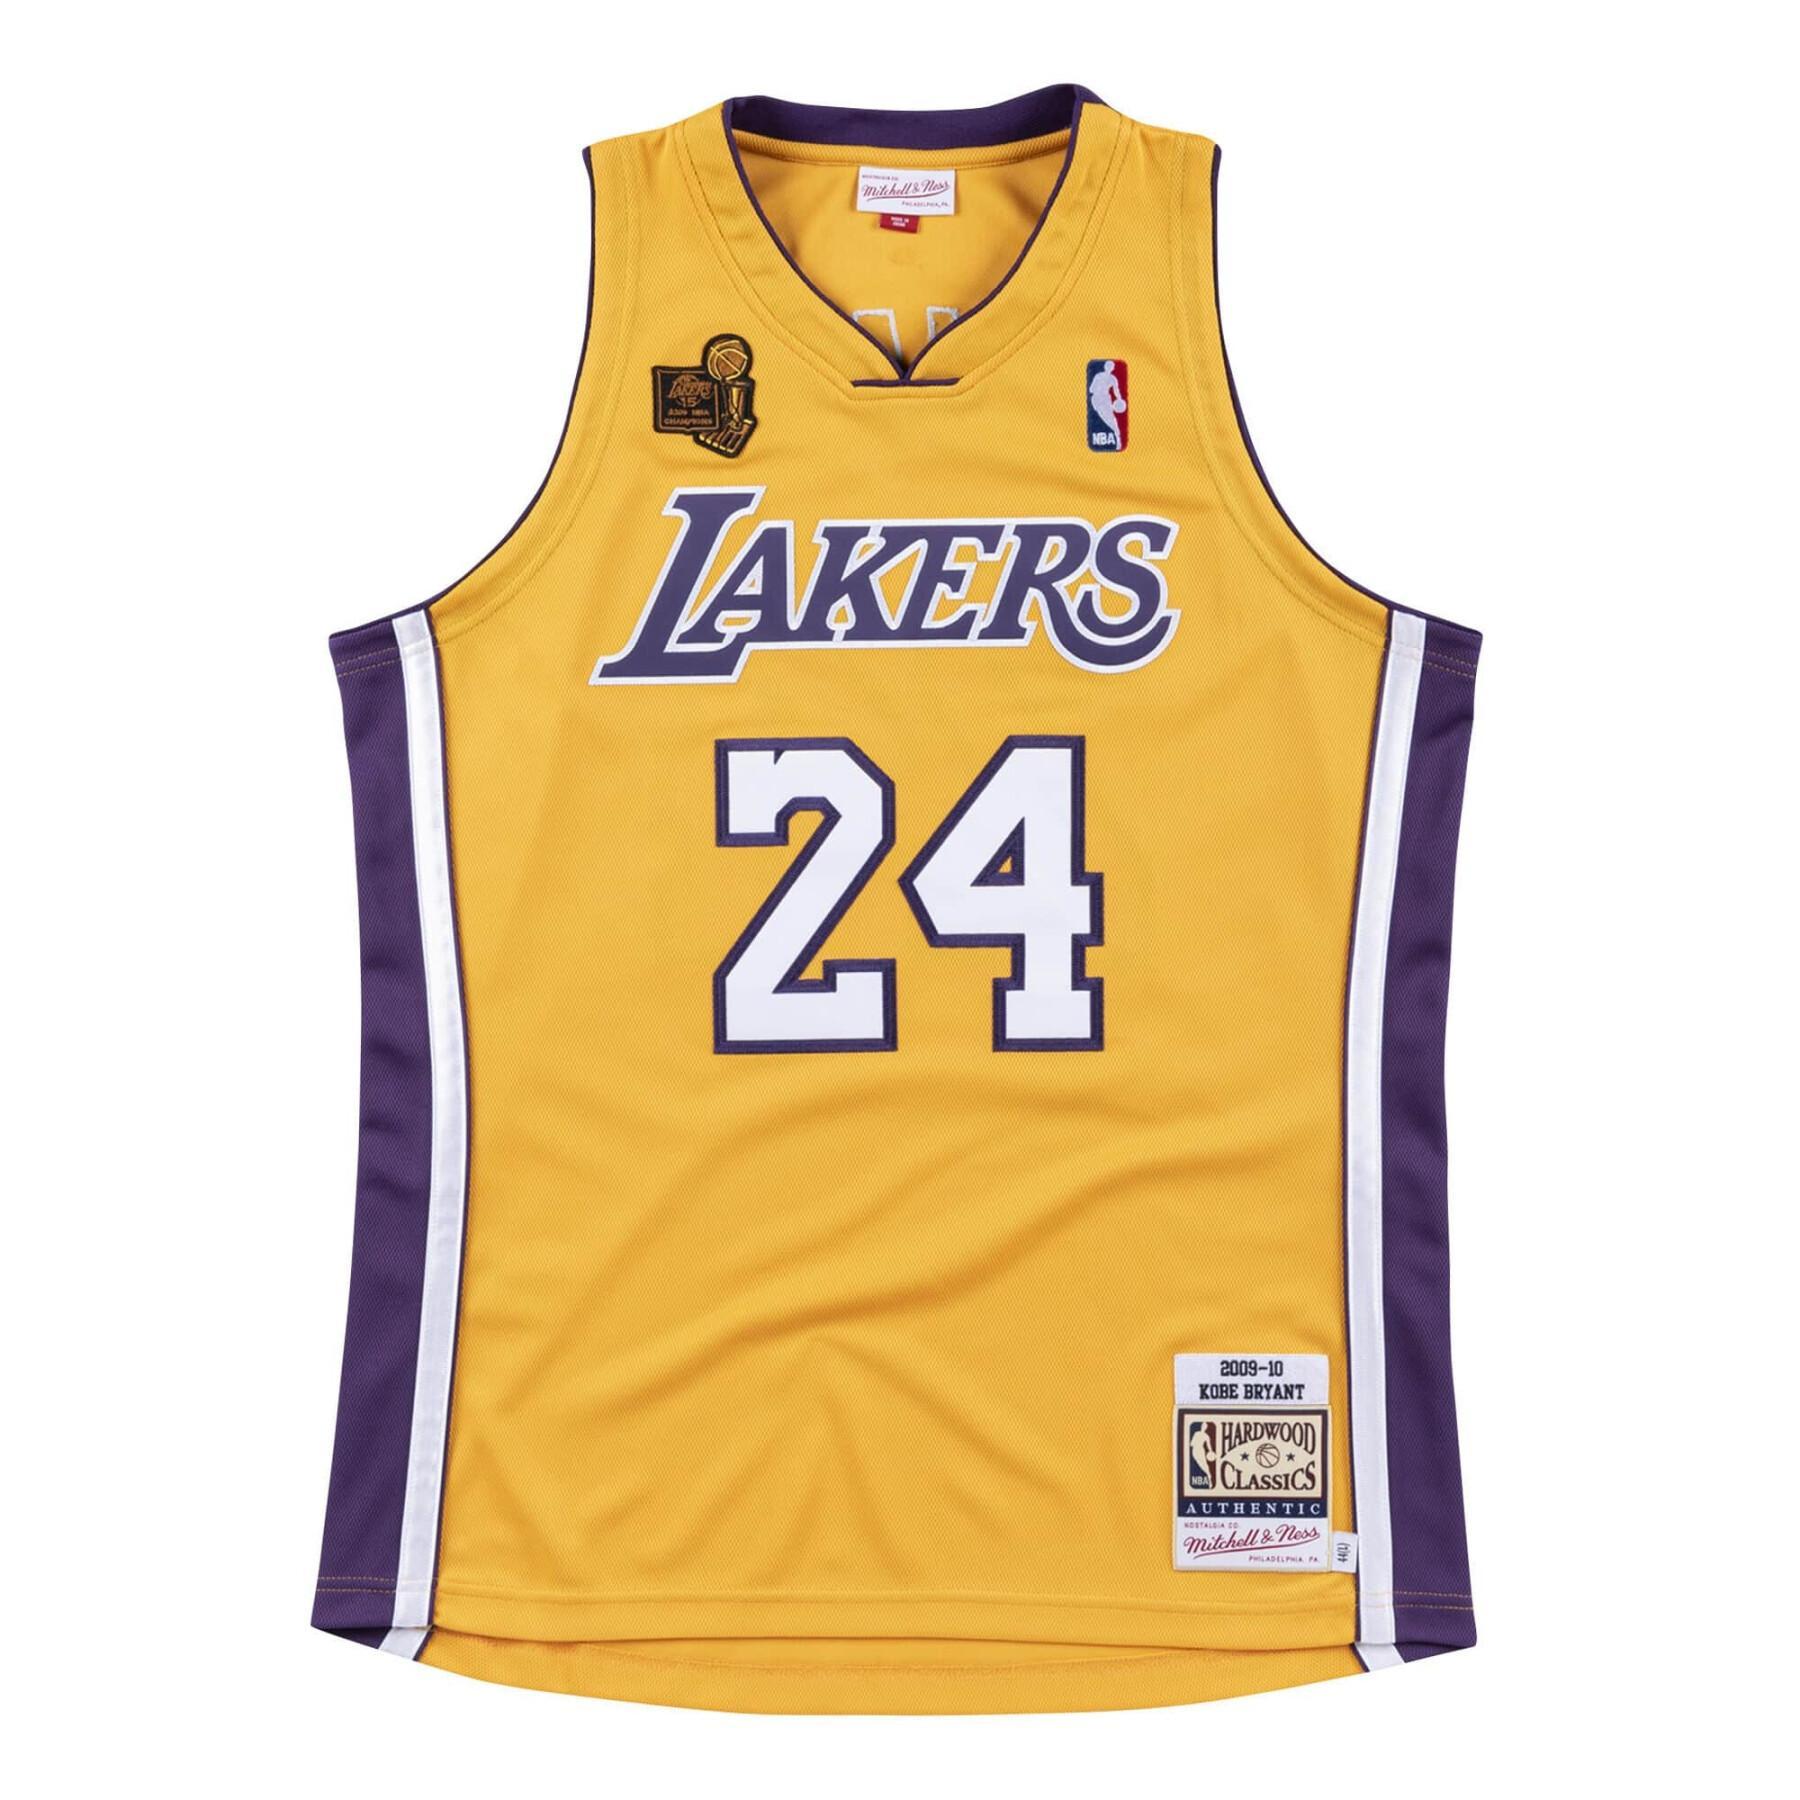 Autentisk tröja Los Angeles Lakers